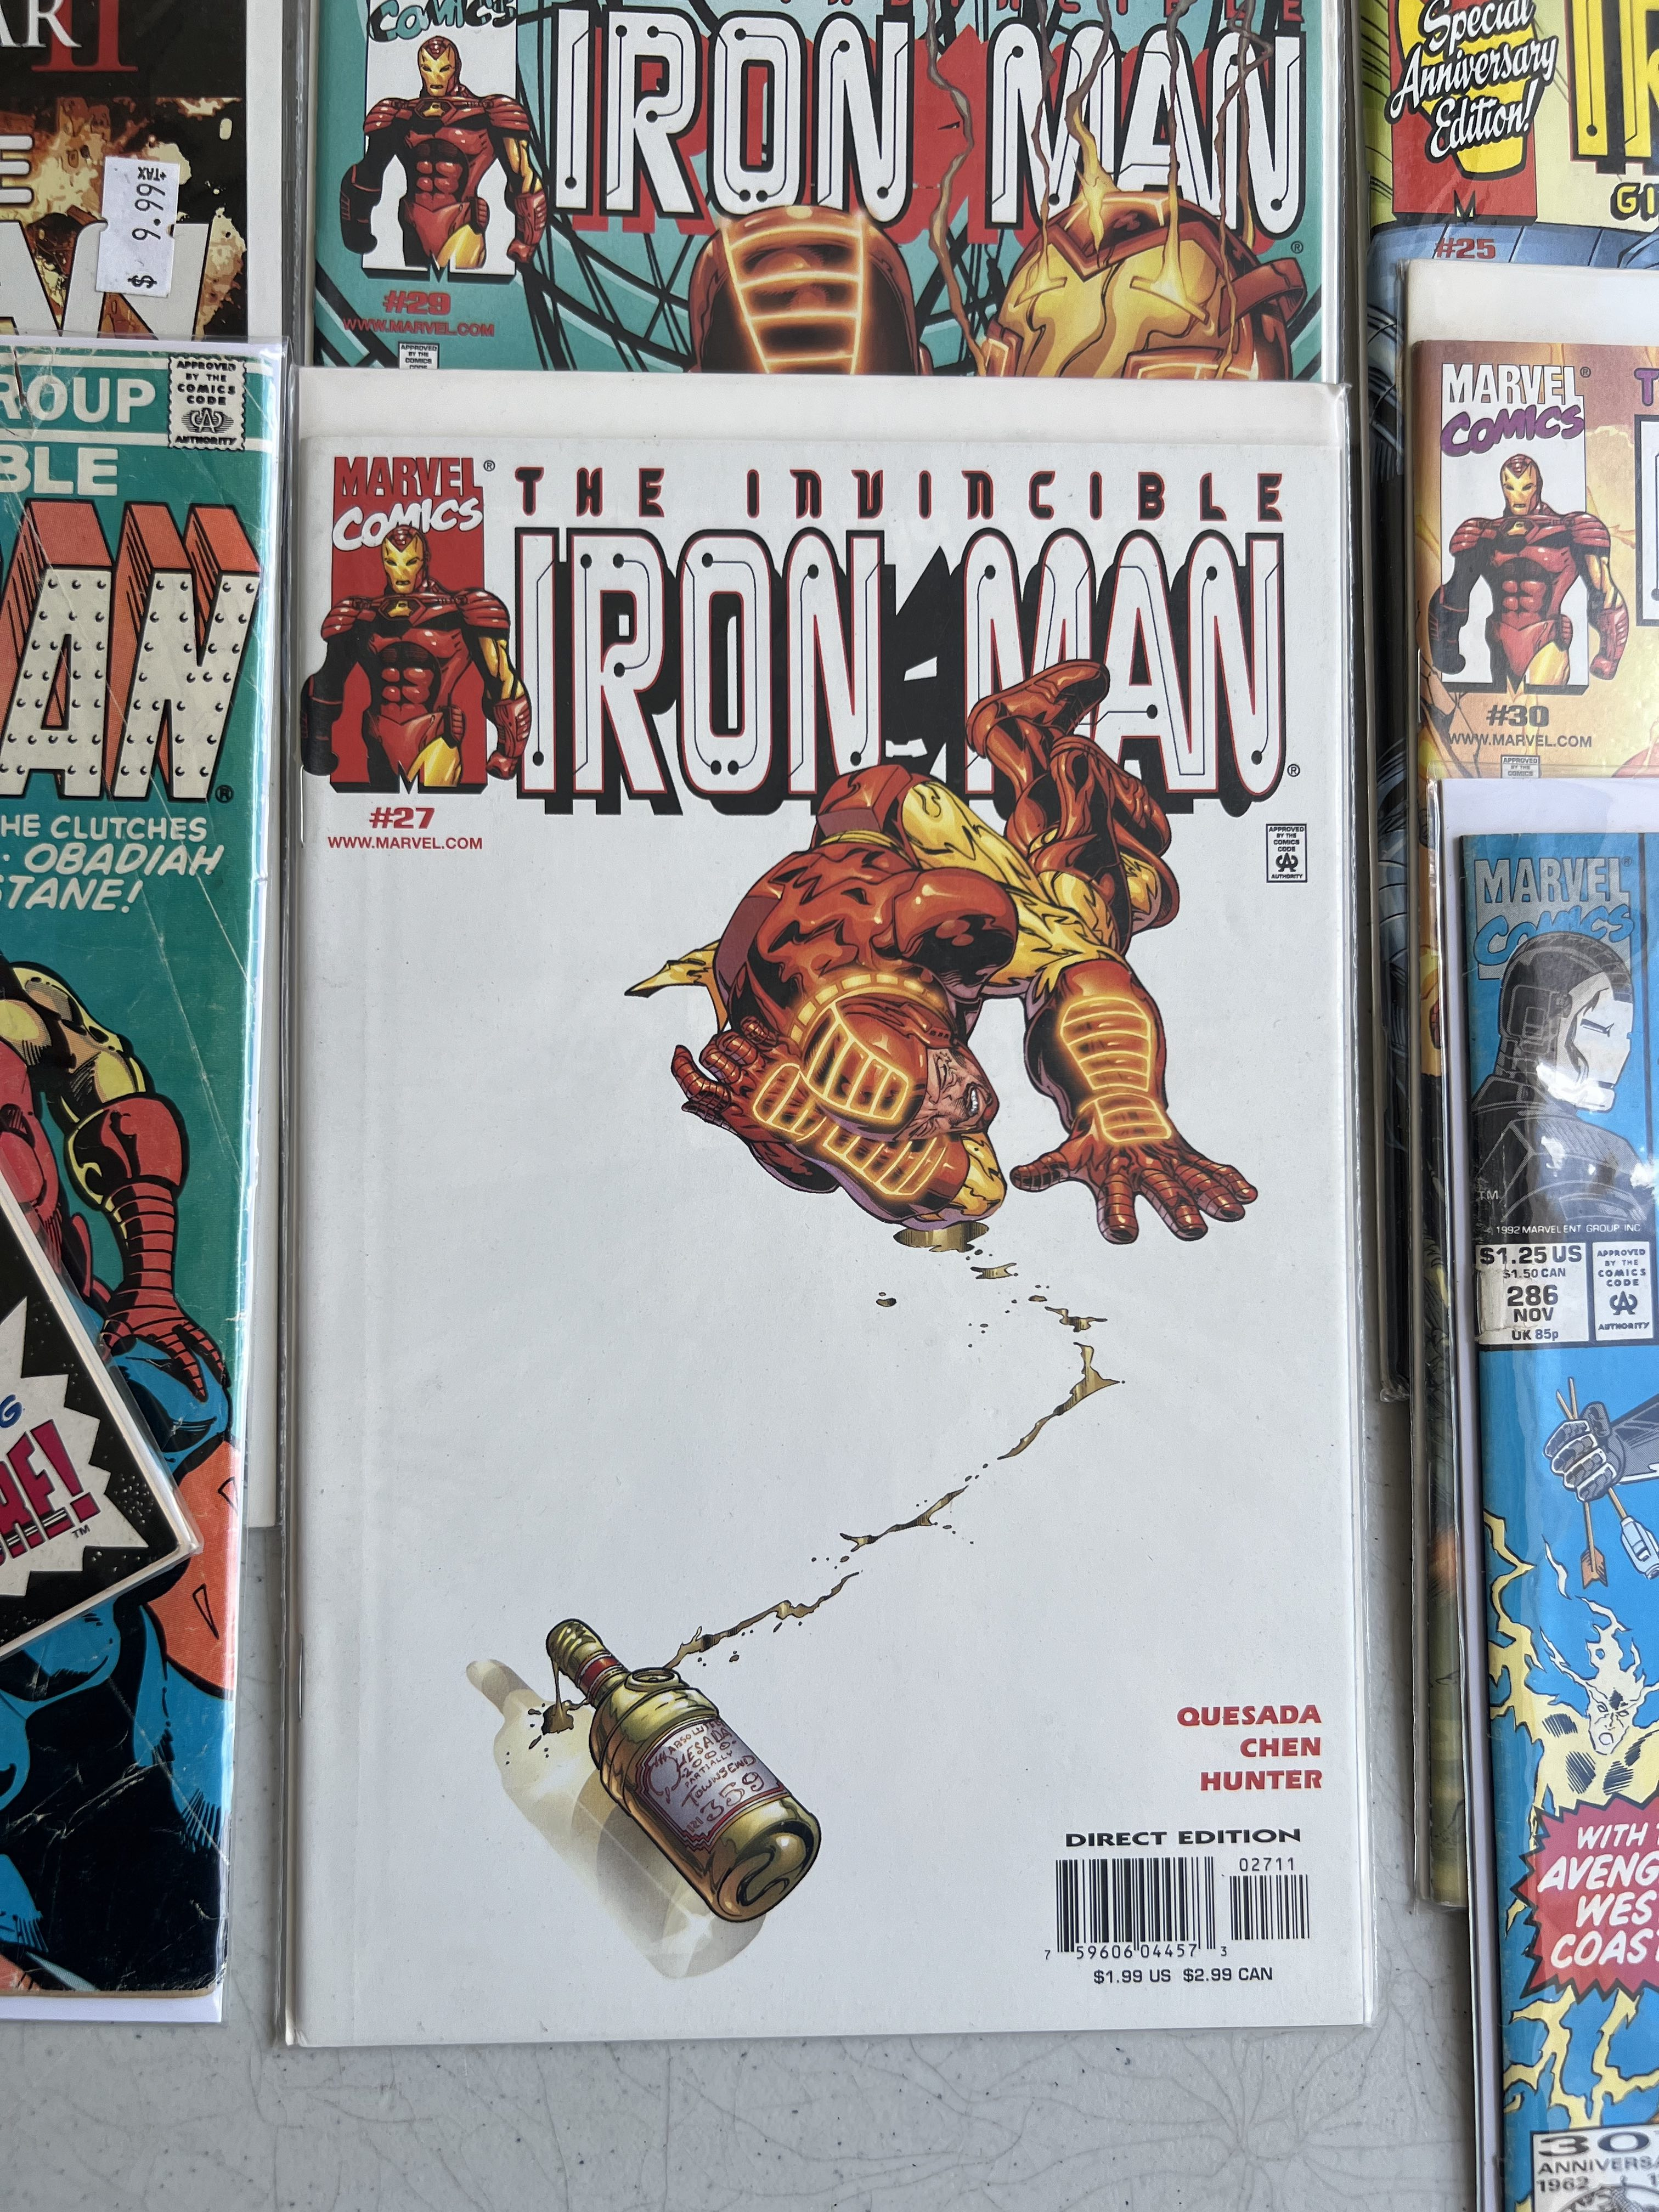 Comic Book Iron Man Collection lot 18 Marvel Comics